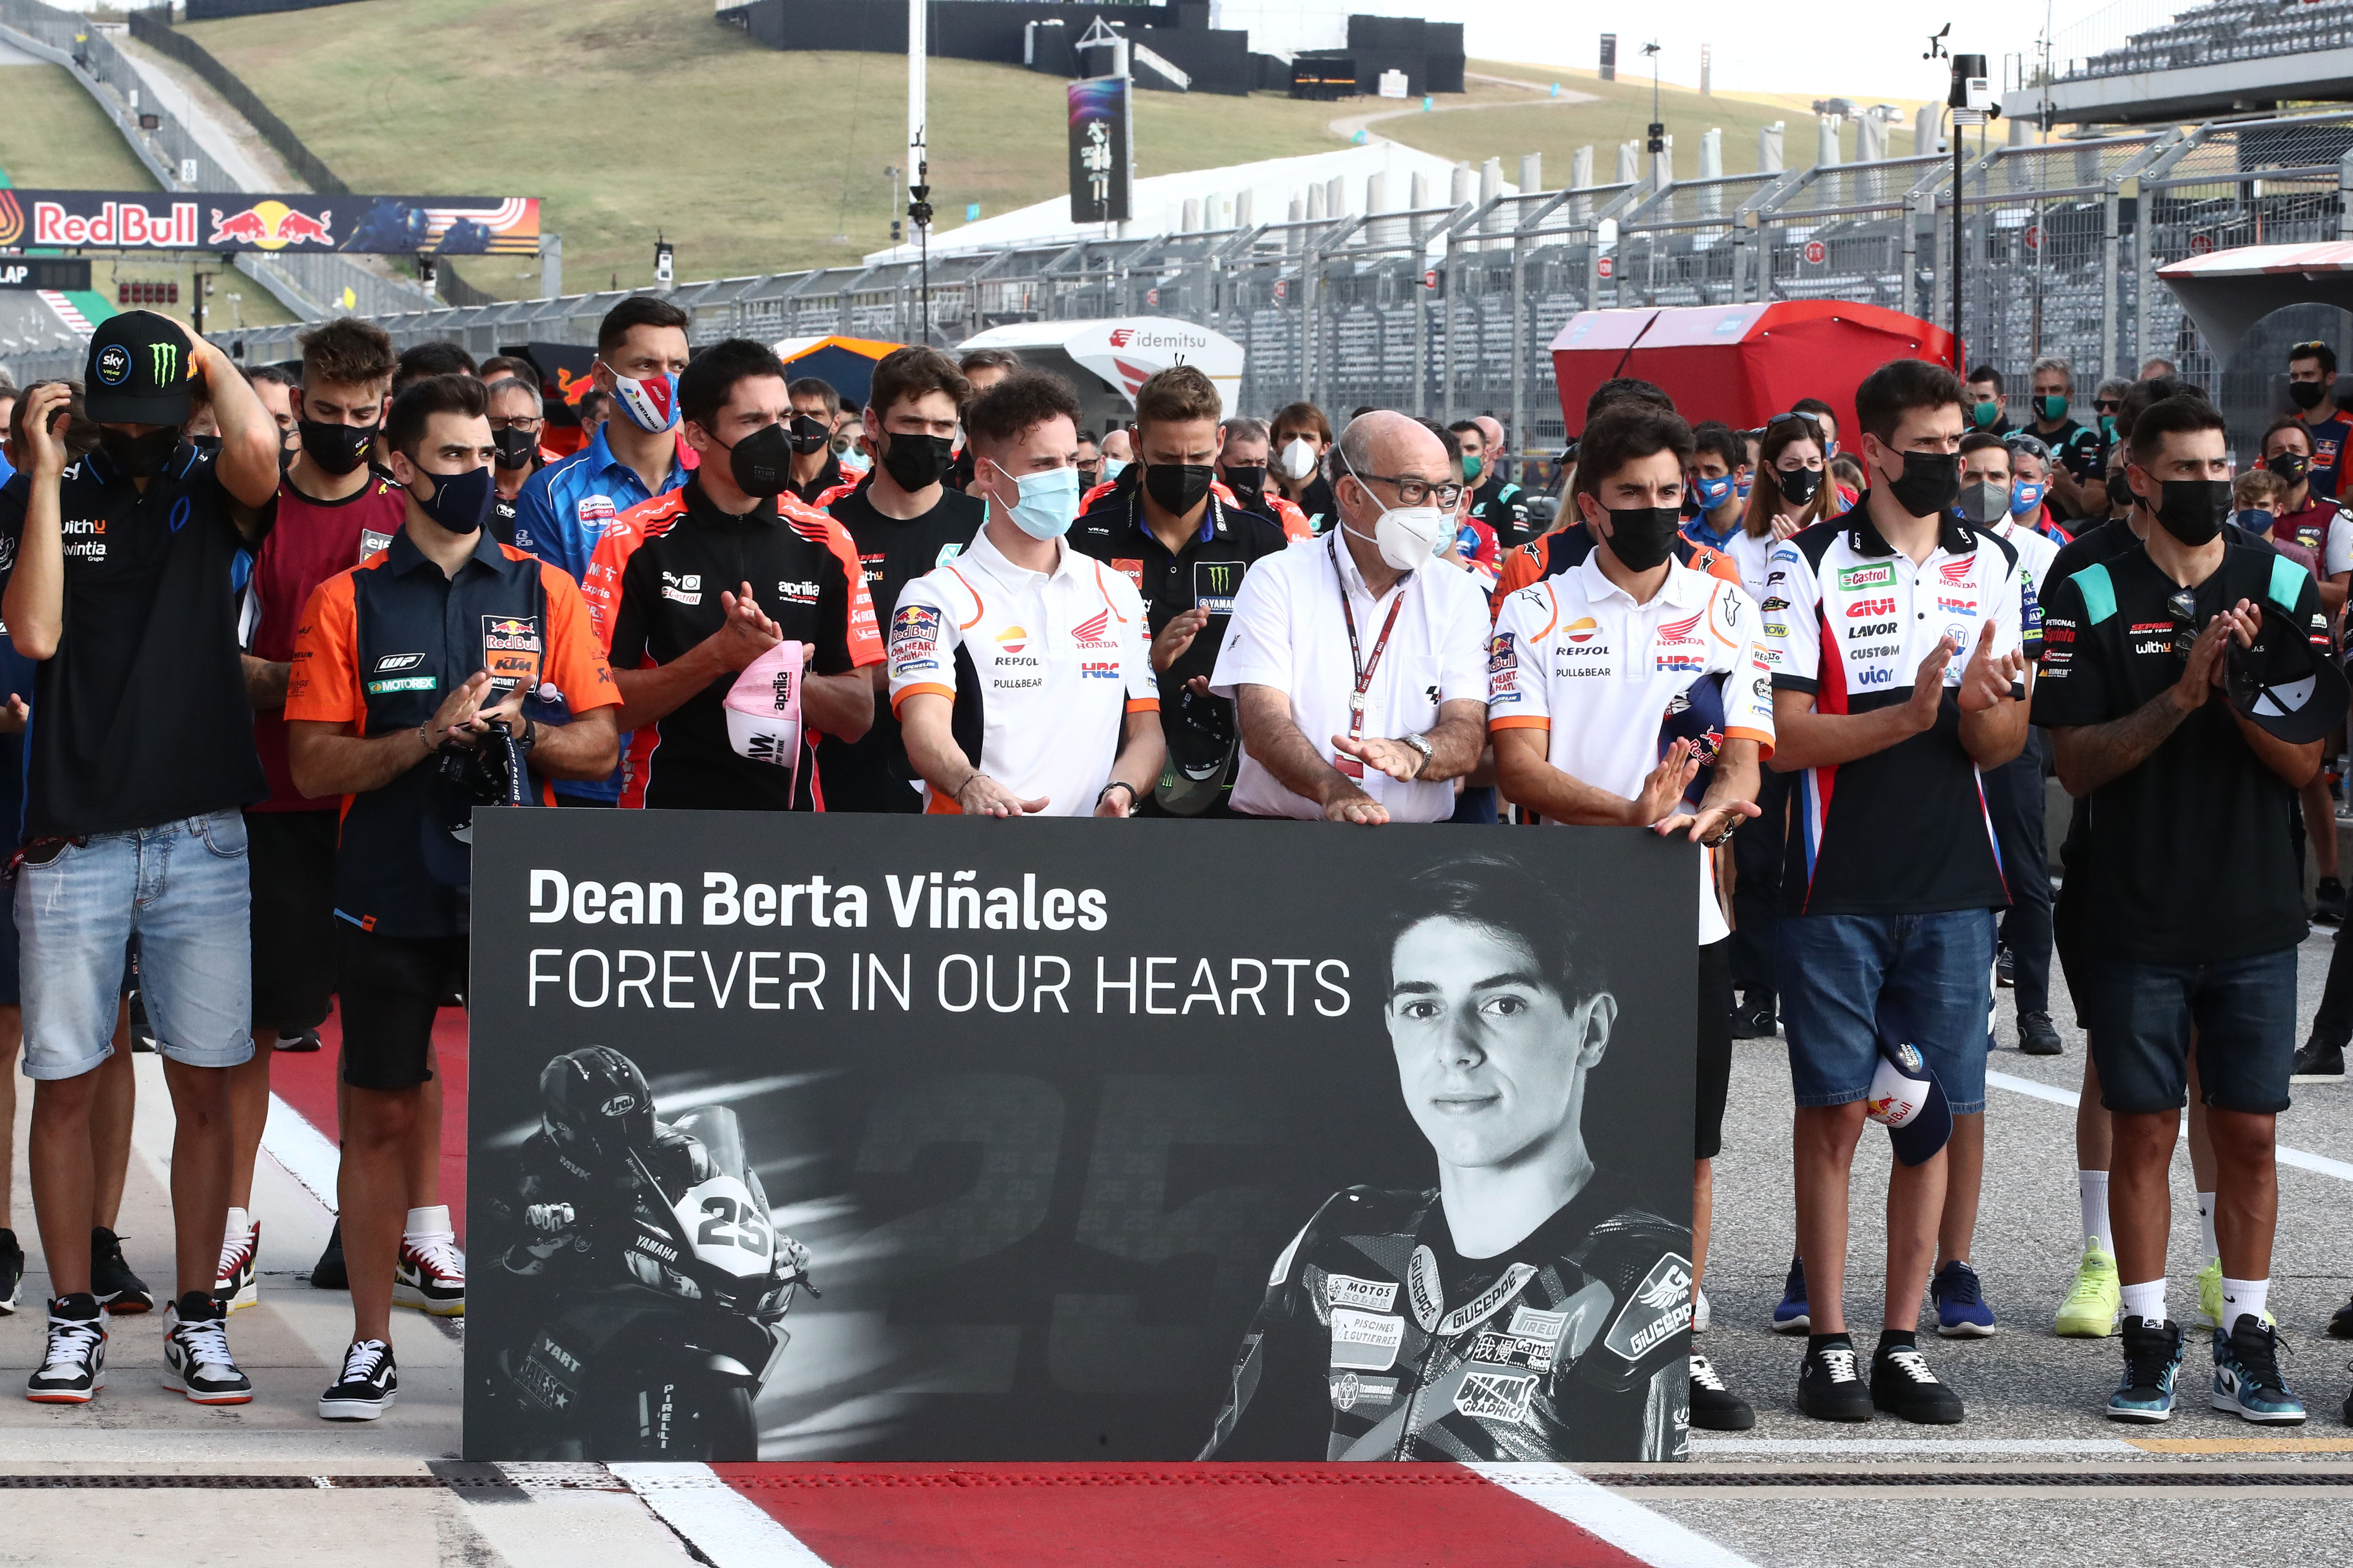 Dean Berta Vinales MotoGP moment of silence